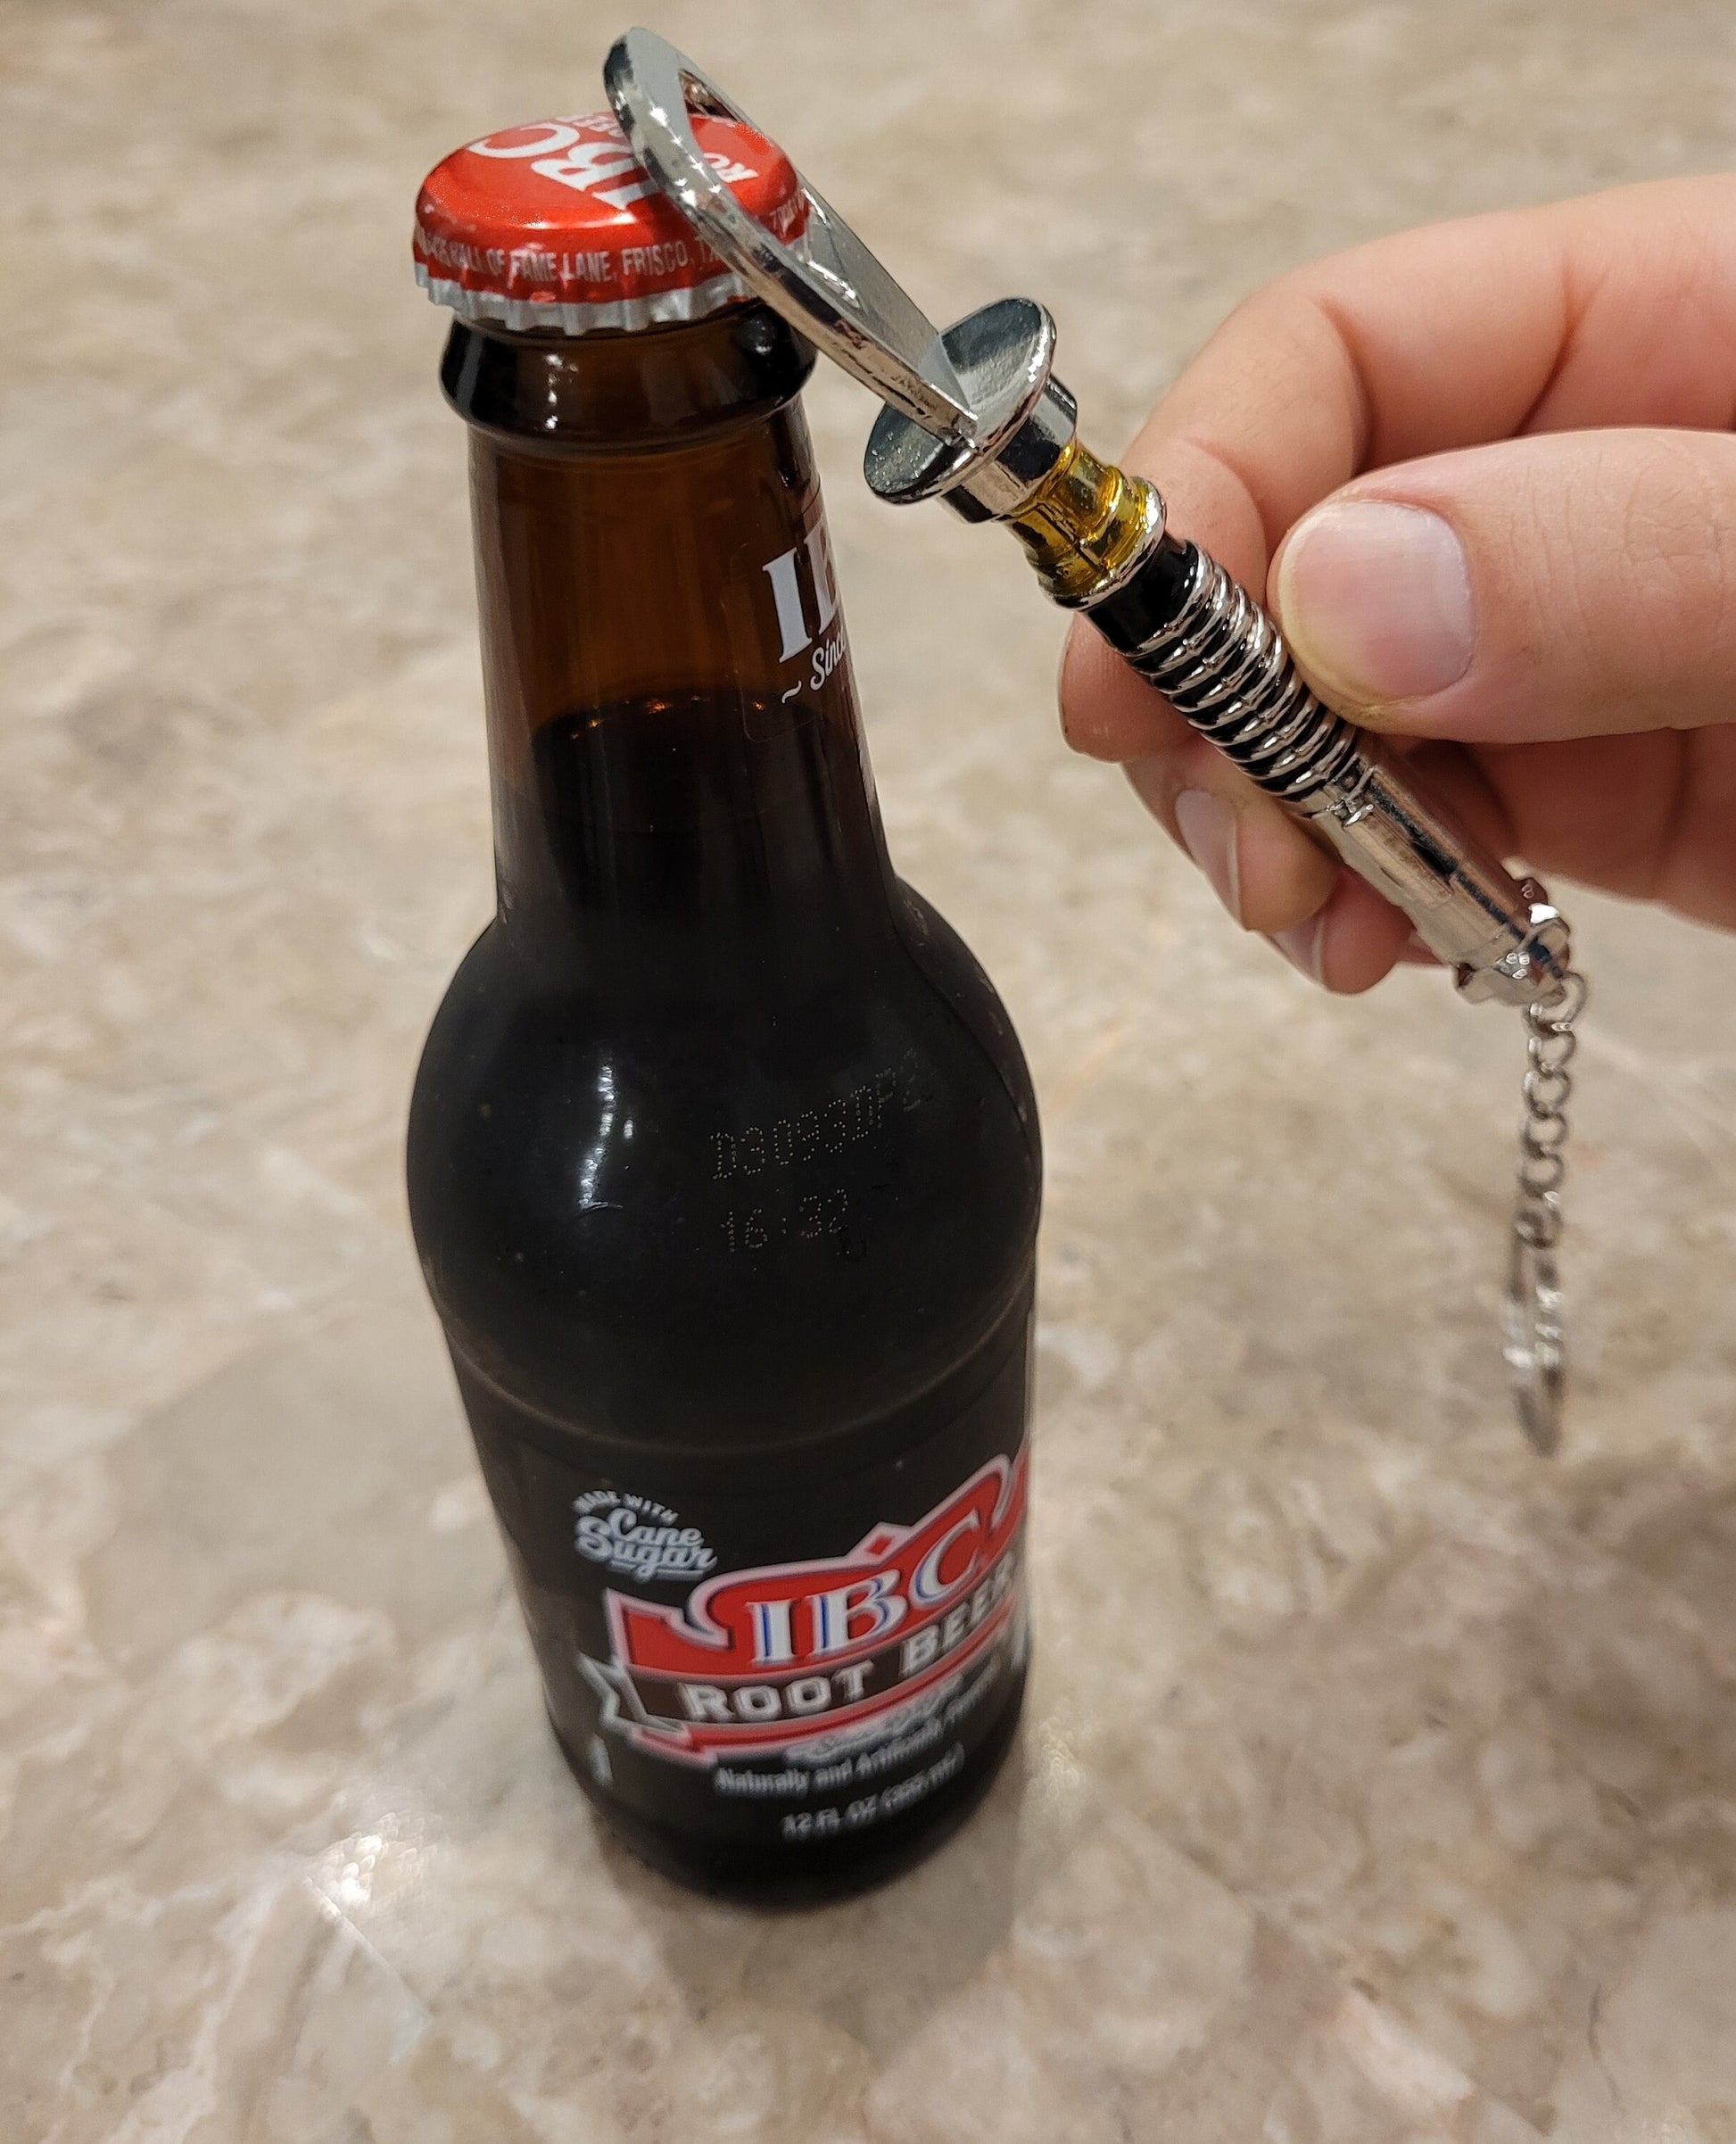 Lightsaber Bottle opener Luke style Key Chain Bottle Opener Jedi Sith Star Wars Gift Bossaber